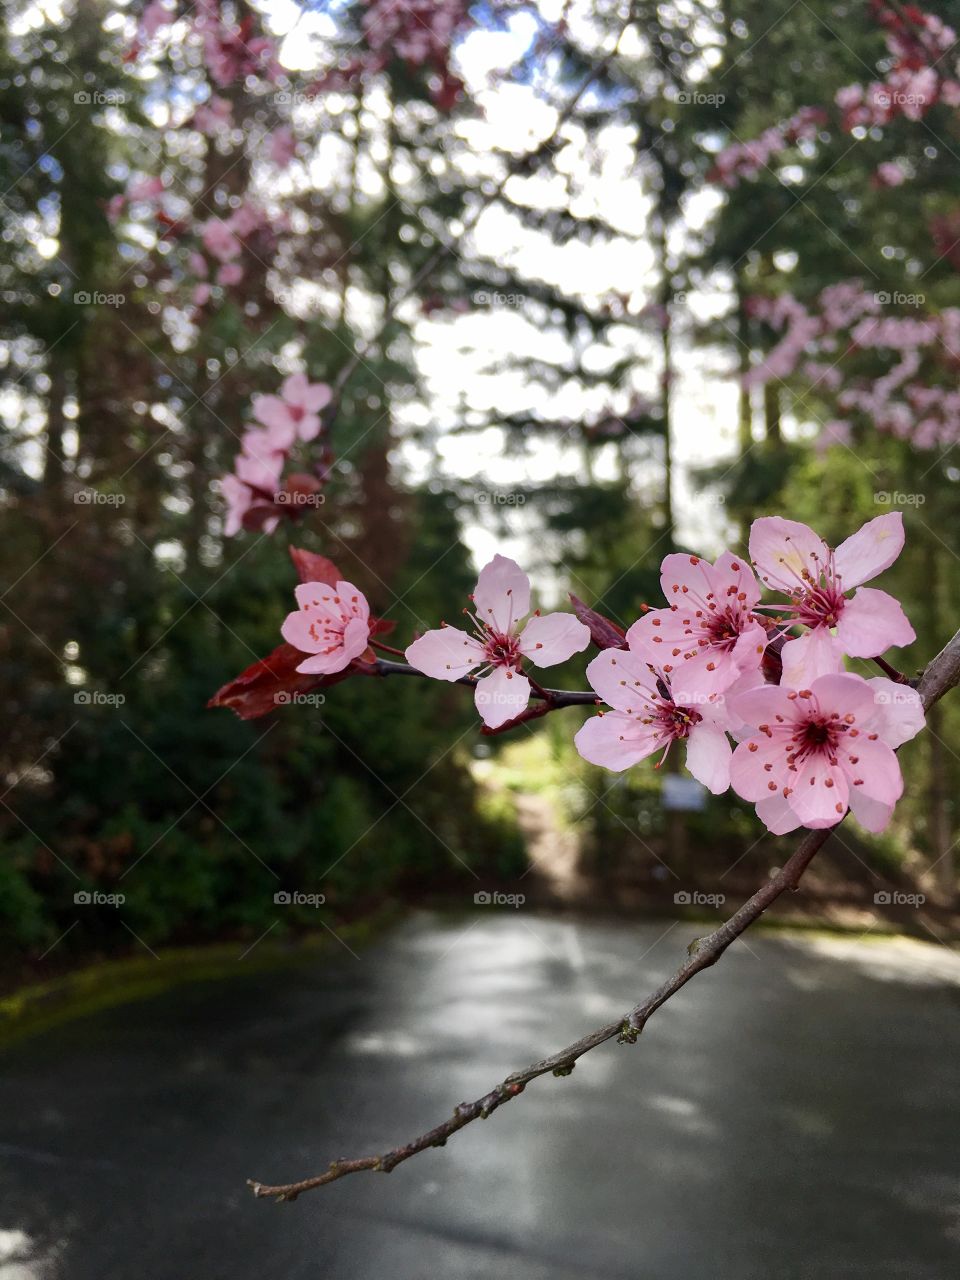 Spring blossom ! Cherry blossom! 